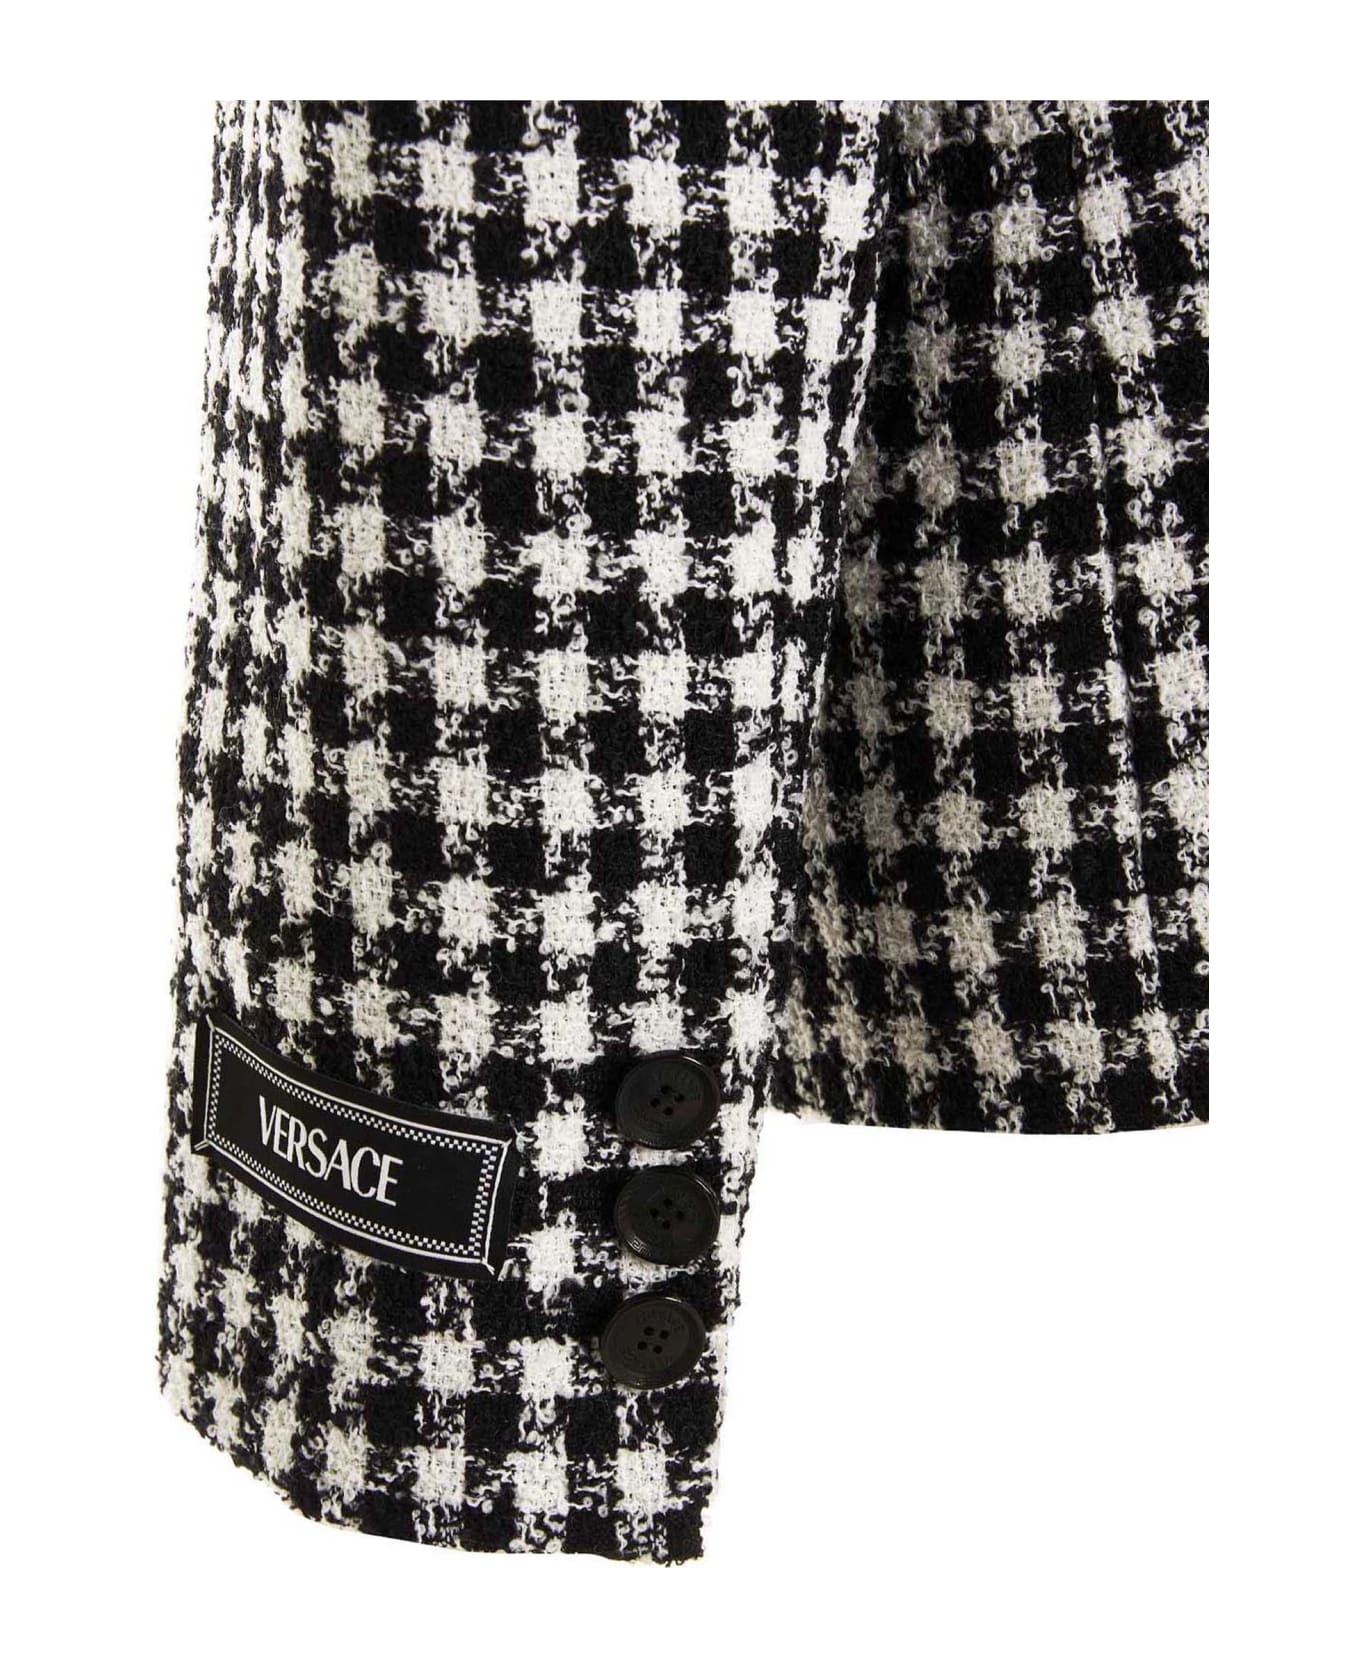 Versace Tweed Wool Blazer Jacket - White/Black